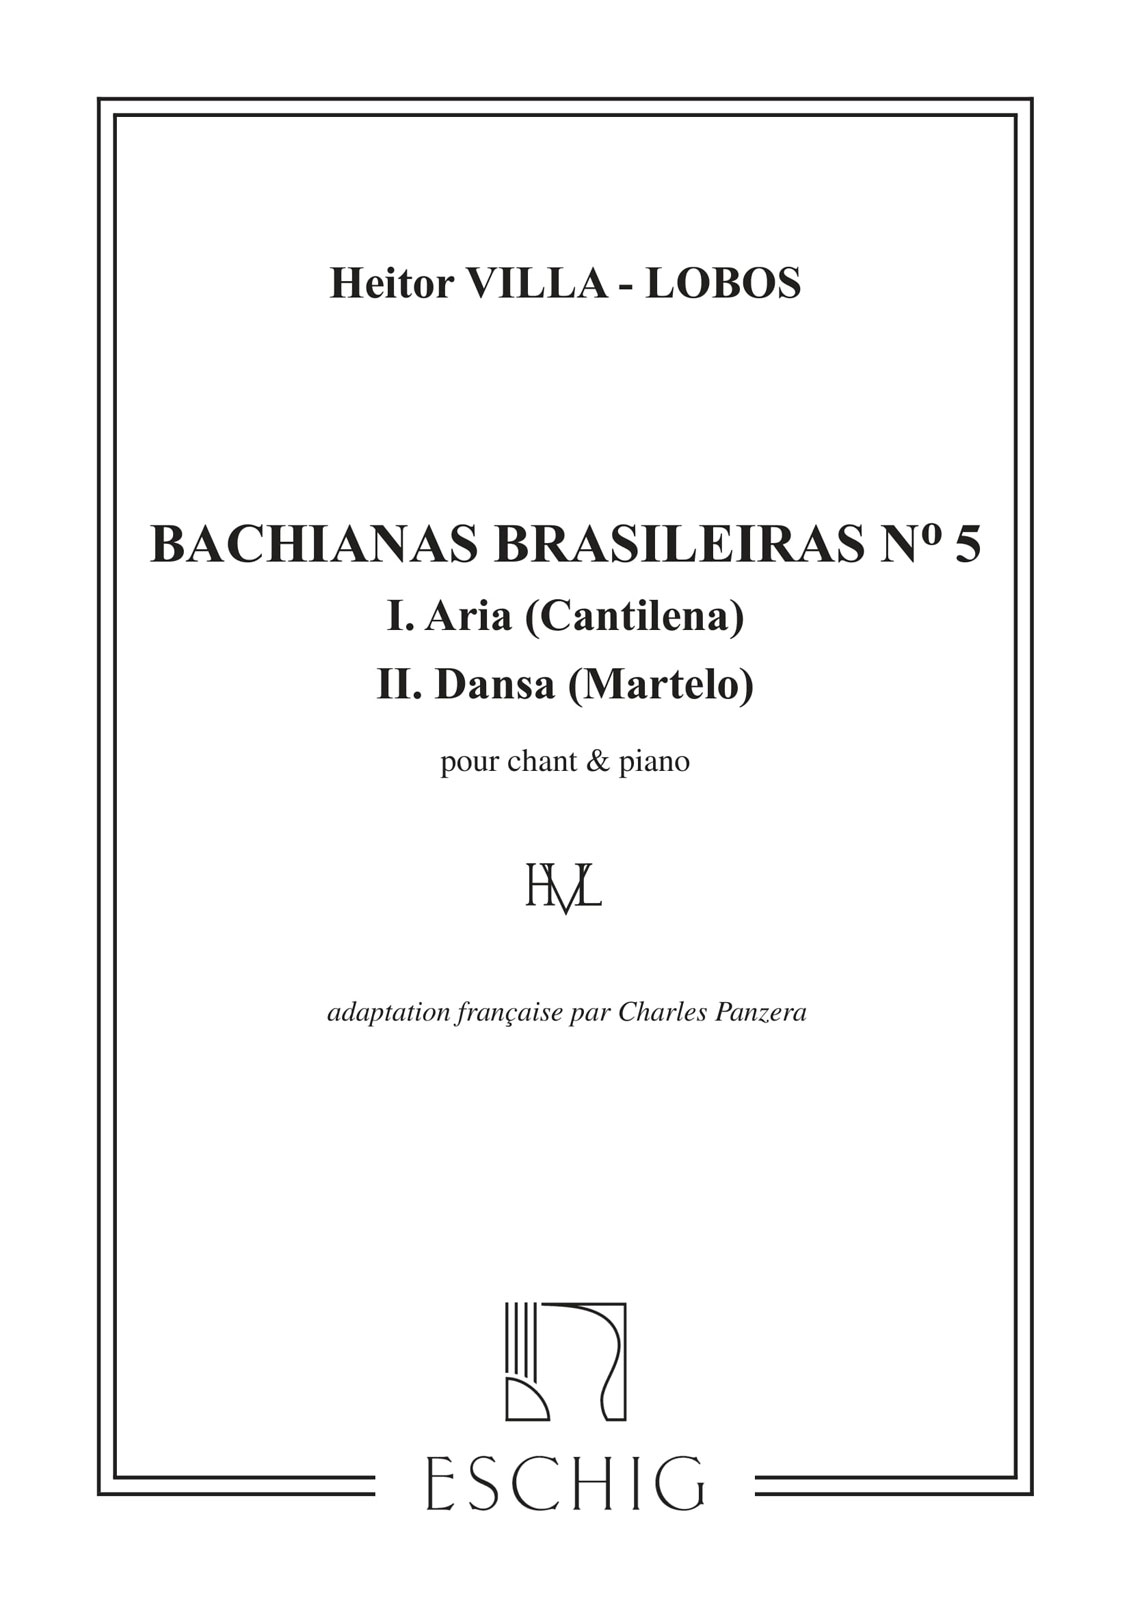 EDITION MAX ESCHIG VILLA-LOBOS H. - BACHIANAS BRASILEIRAS N. 5 - CHANT ET PIANO